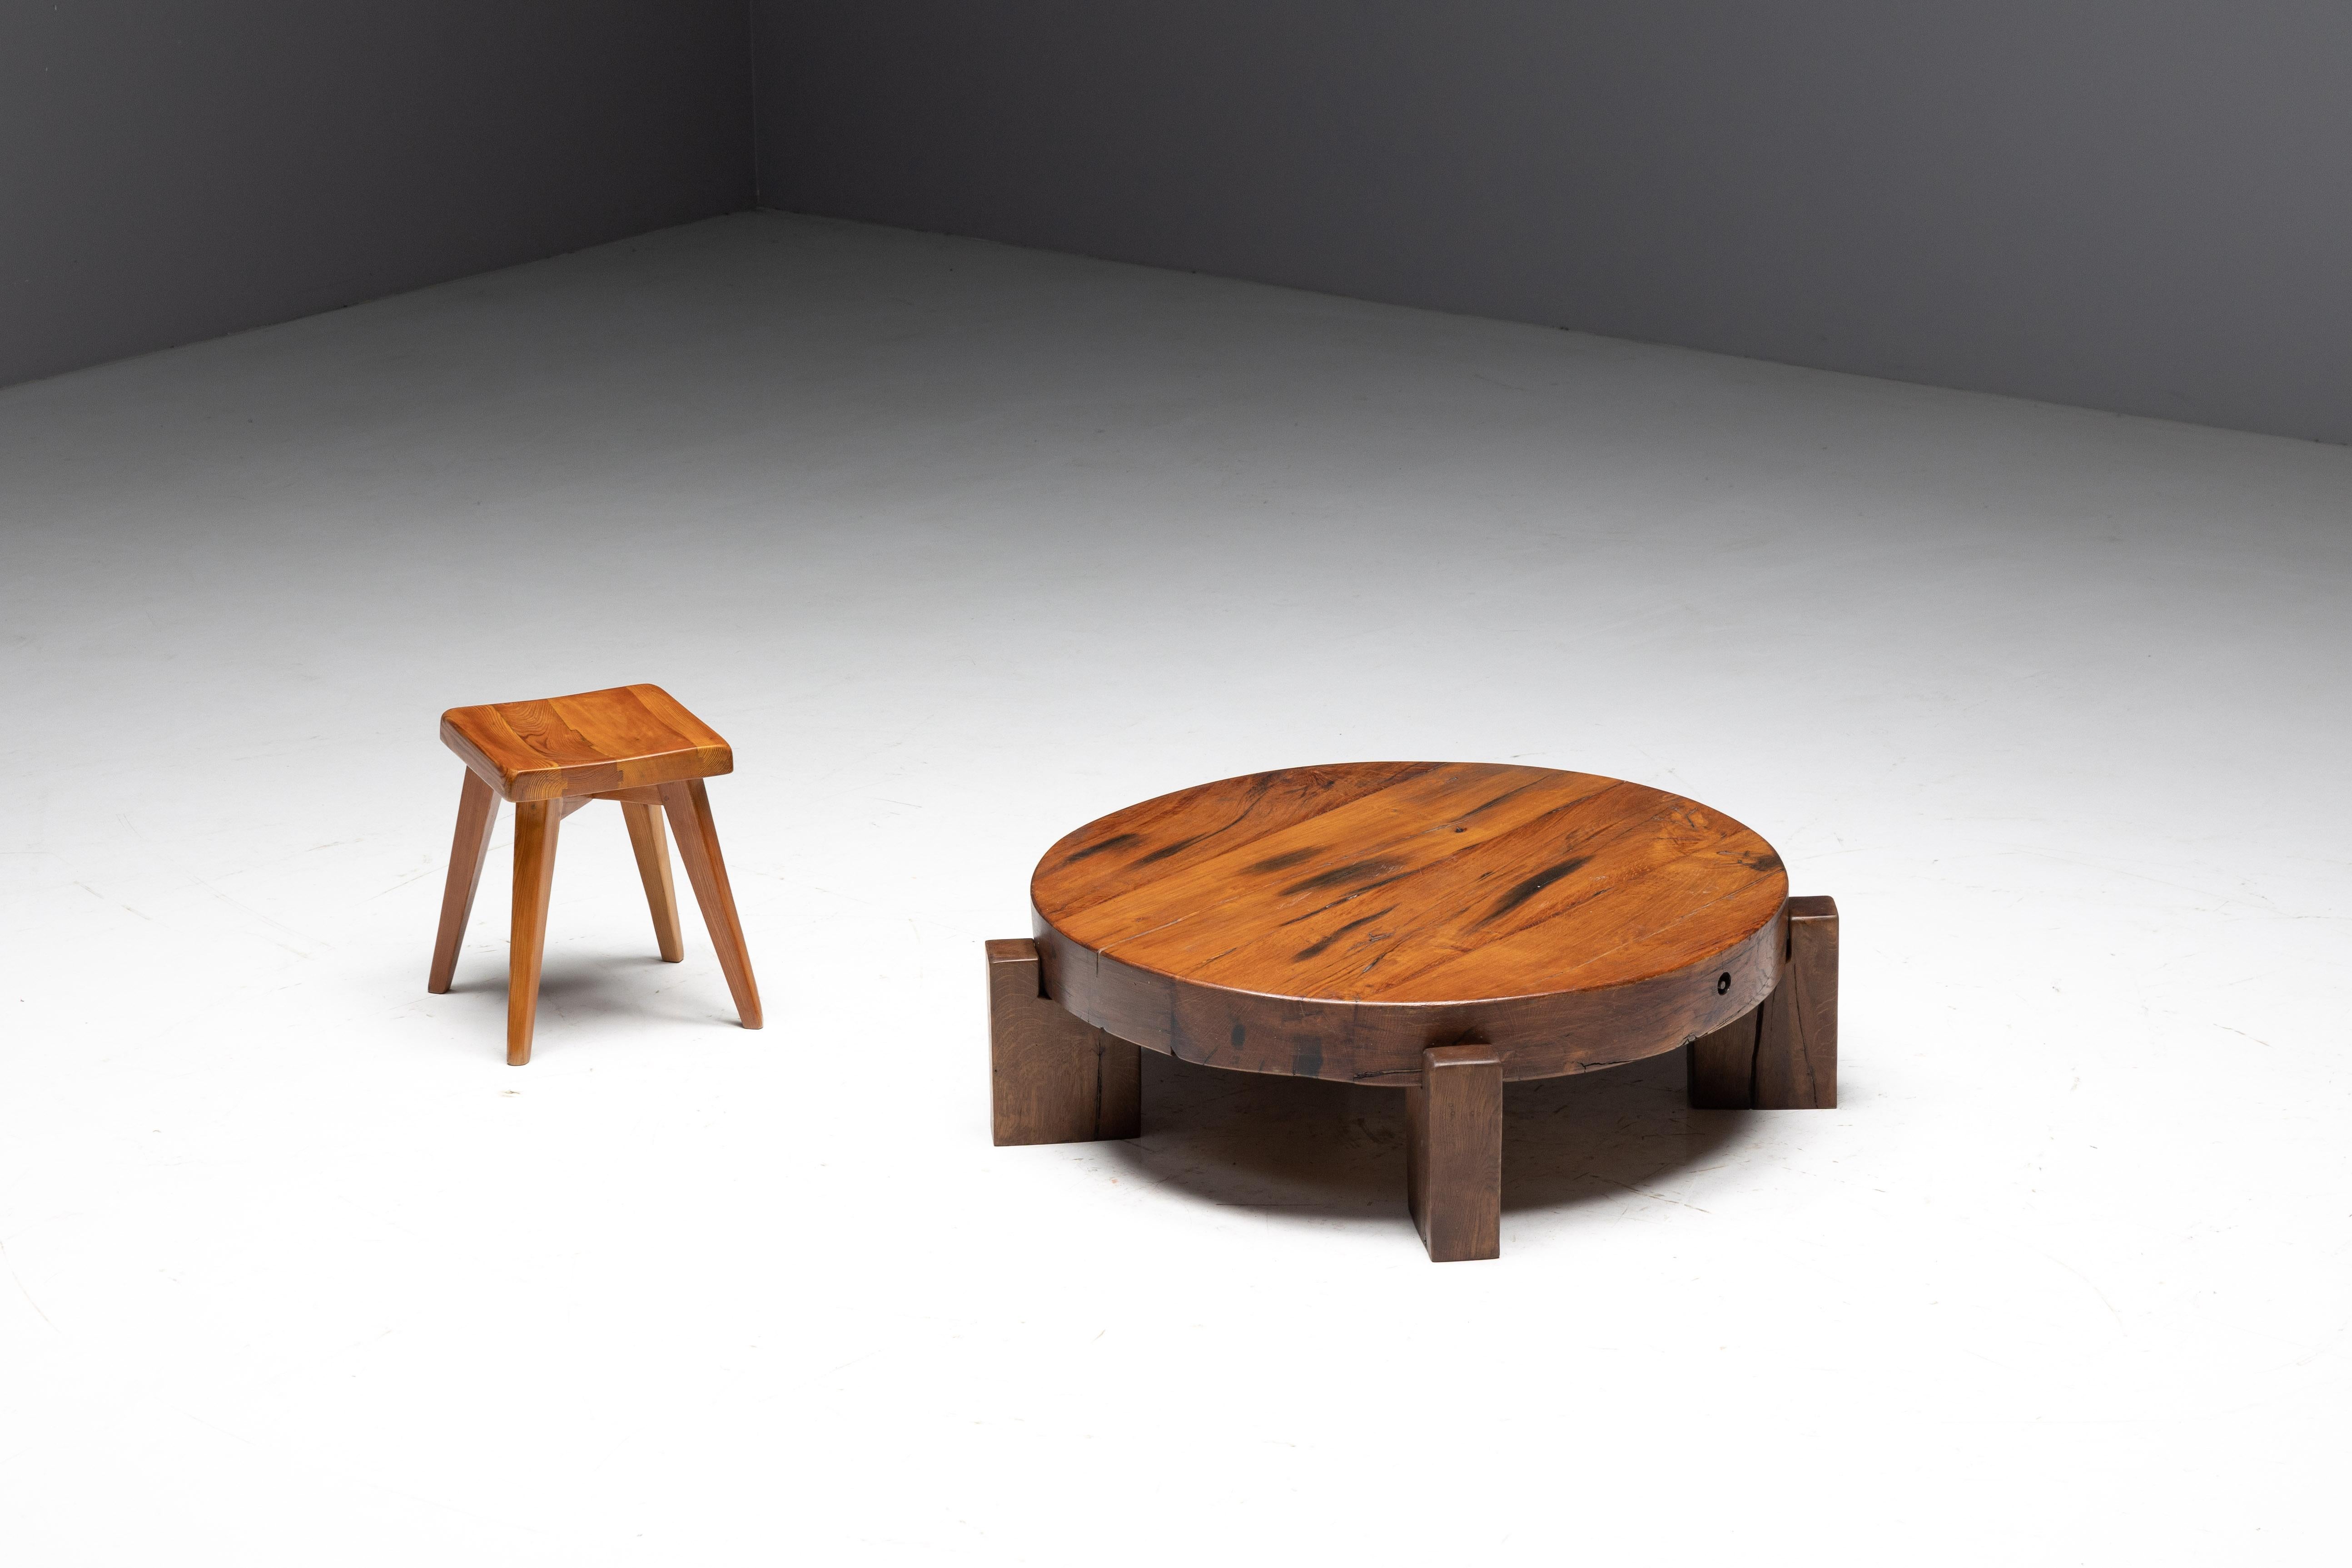 Table basse ronde en bois brutaliste avec une base à quatre pieds, fabriquée en bois massif avec une patine charismatique. L'intégration harmonieuse du plateau et des pieds lui confère un caractère unique et en fait une pièce à part dans tout décor.